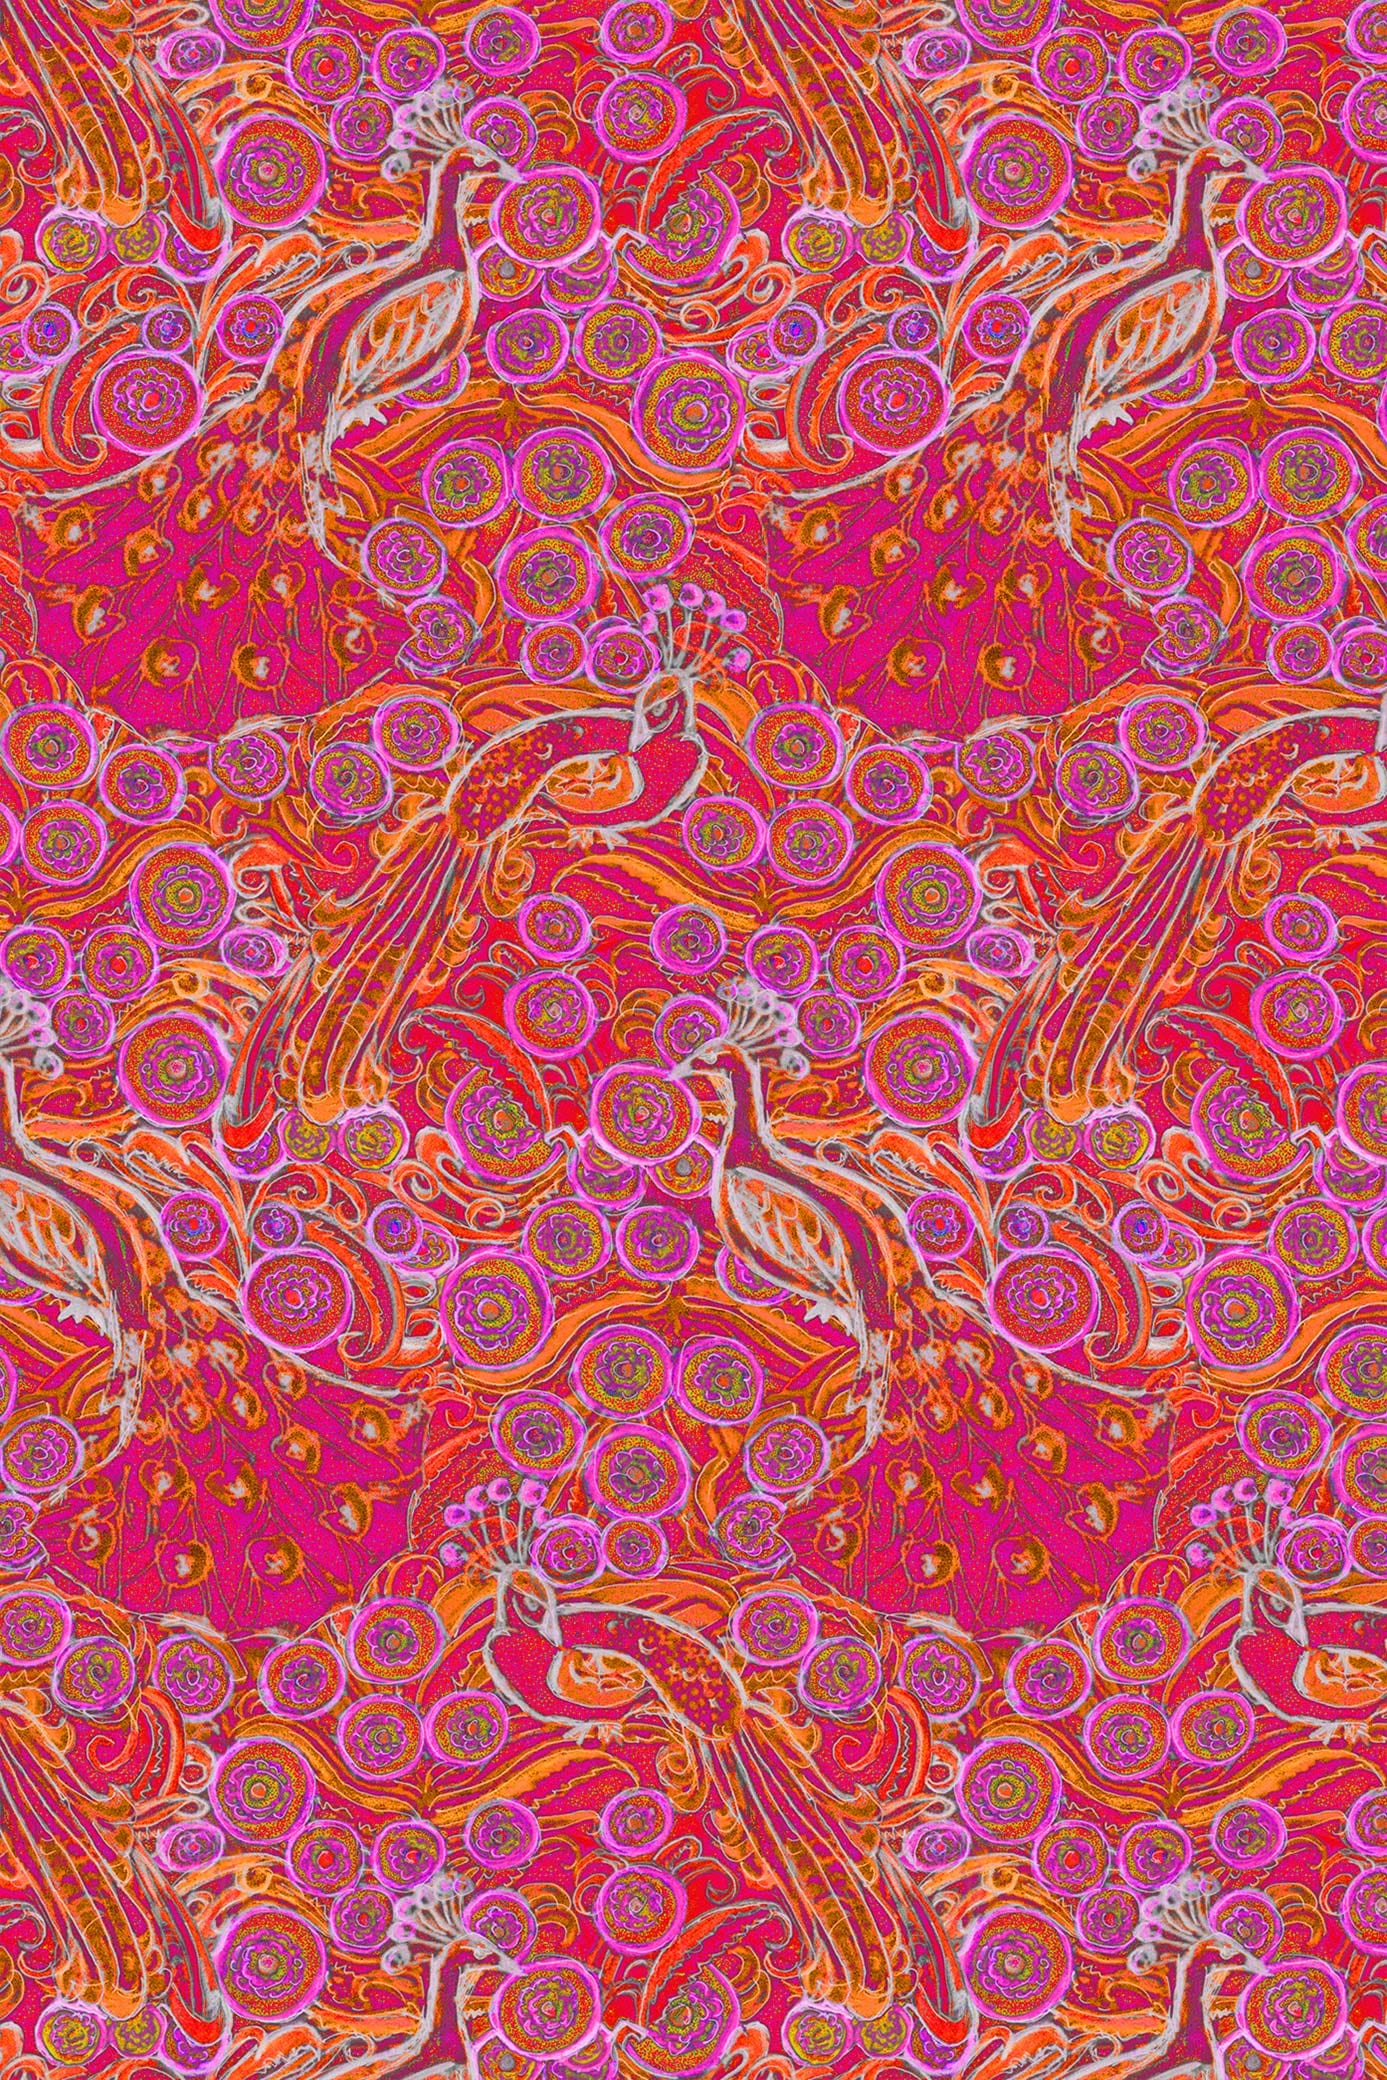 W.E.T. by Ines Schneider Dress Belladonna 22 / Pavone mode hamburg print sommerkleid Unique Prints Summer Dress Handdesignierte Prints Print